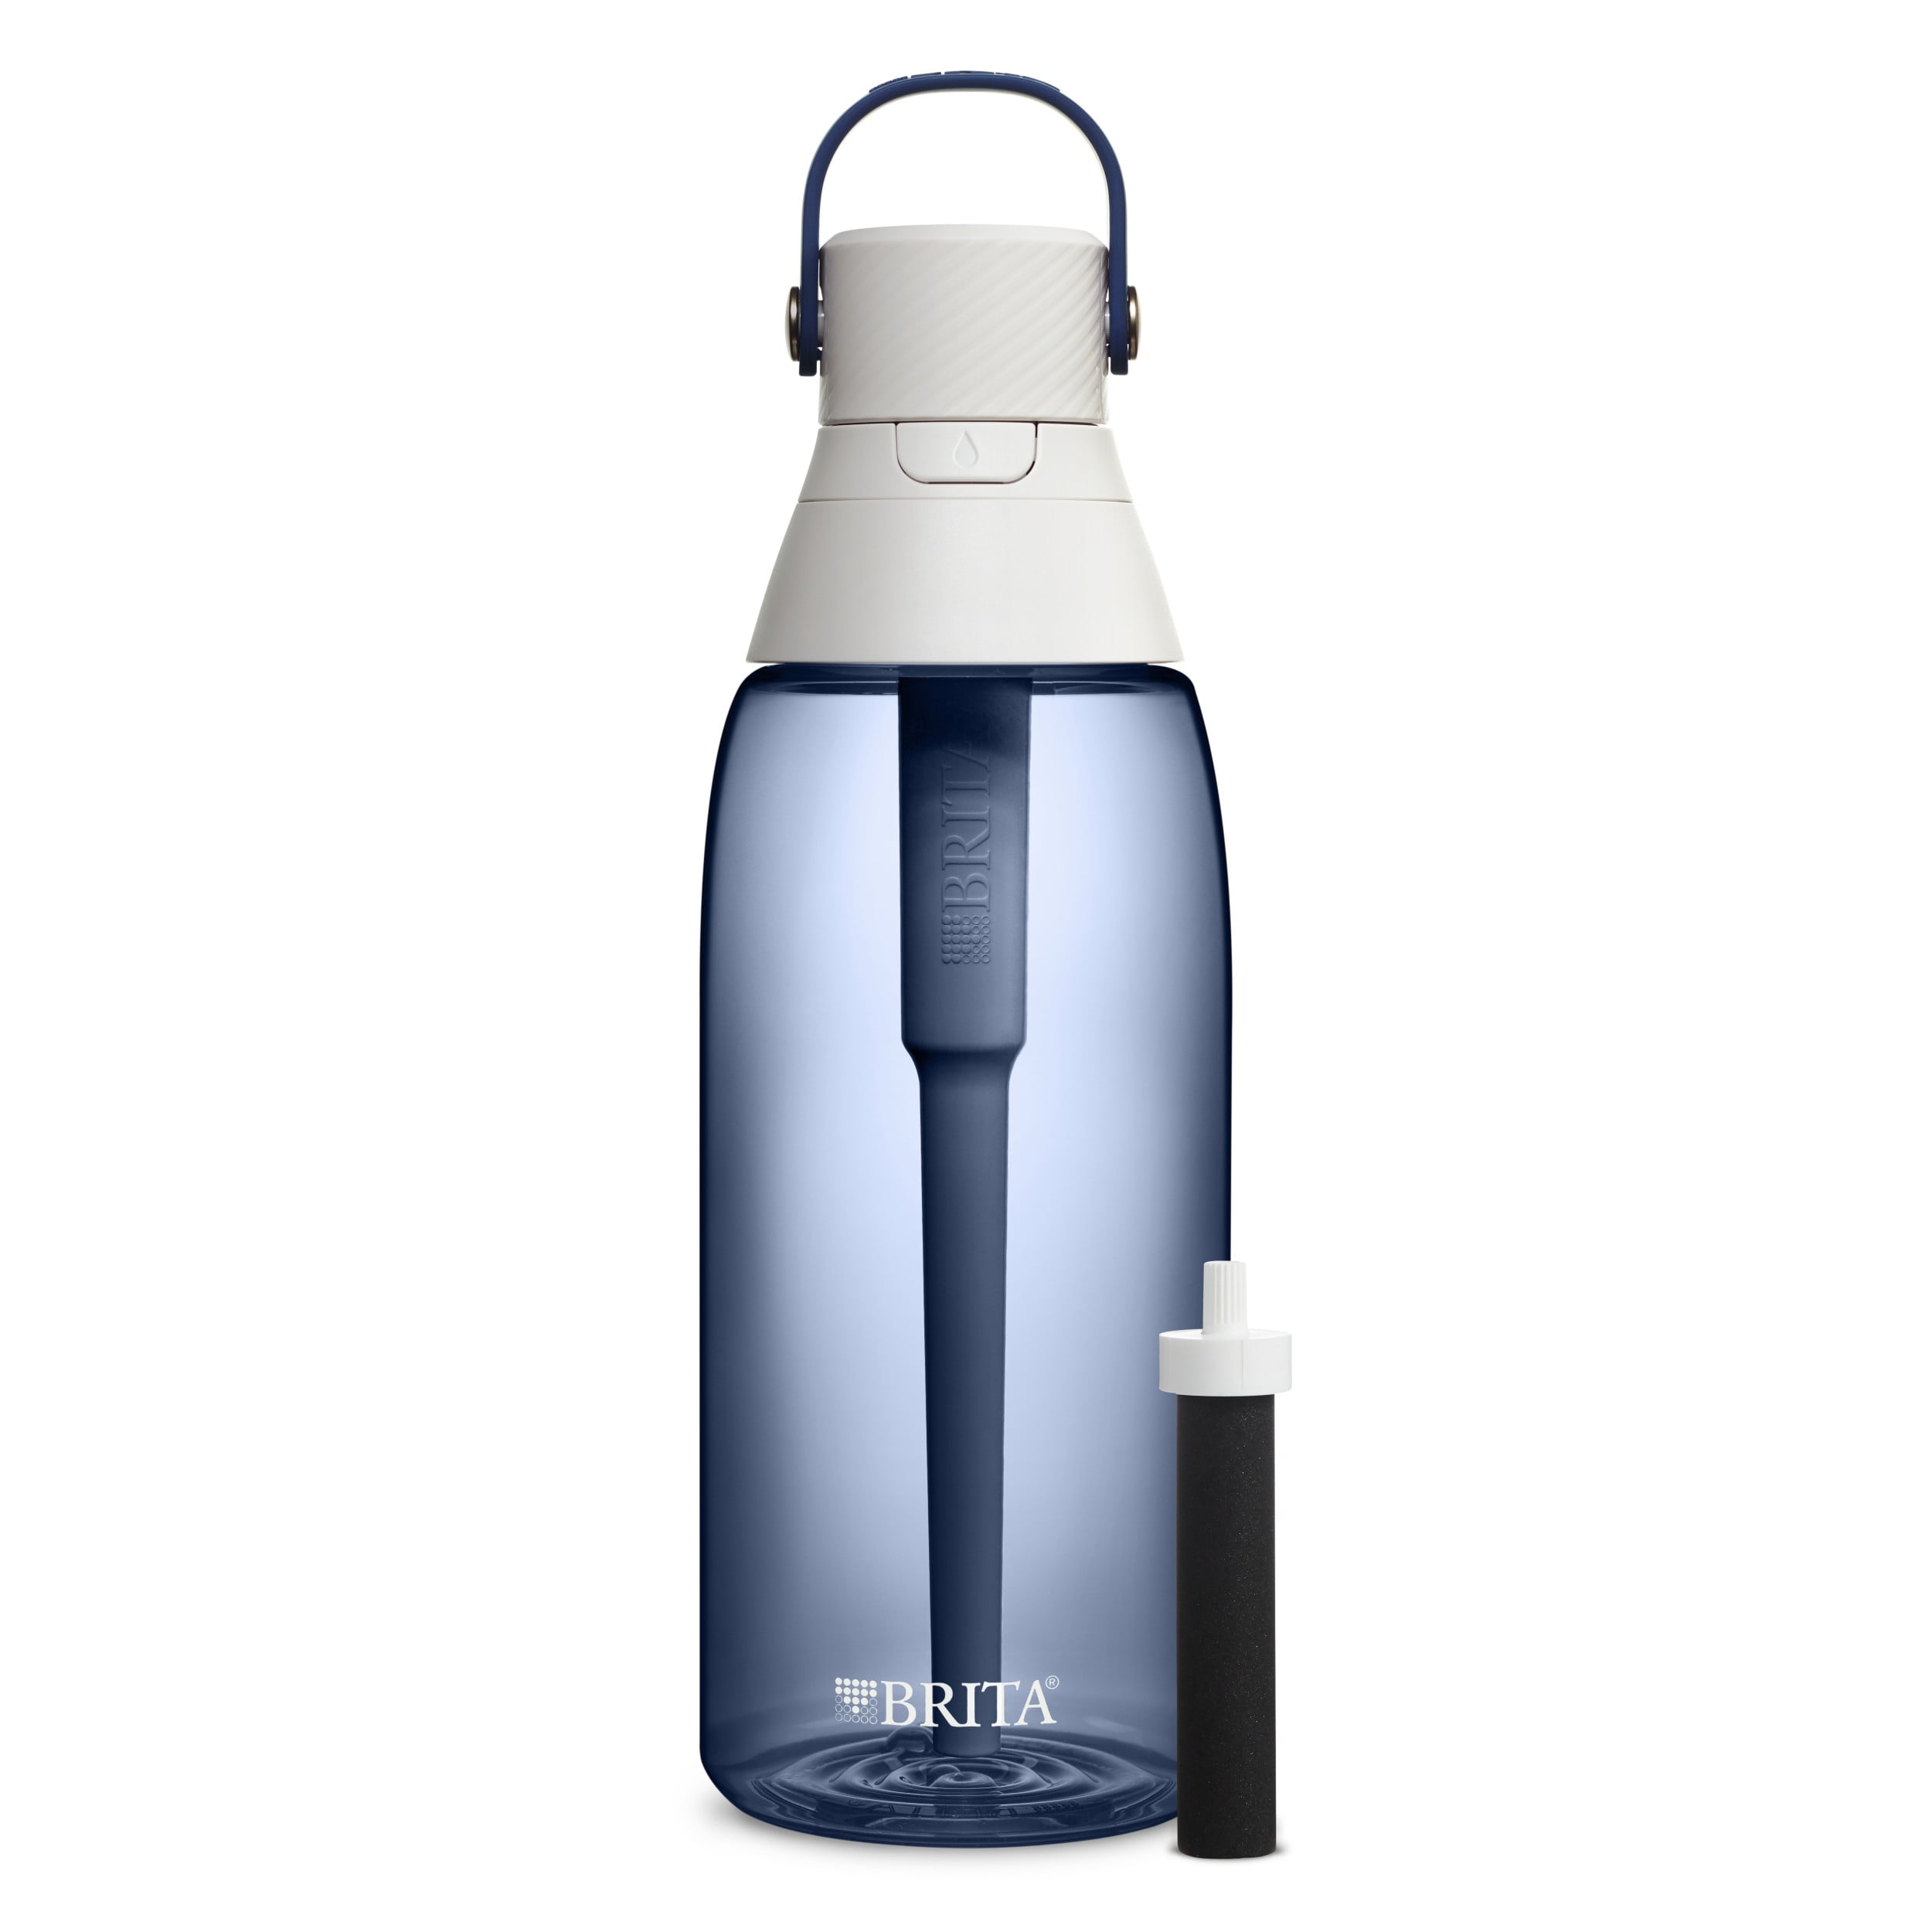 Sky Water Bottle